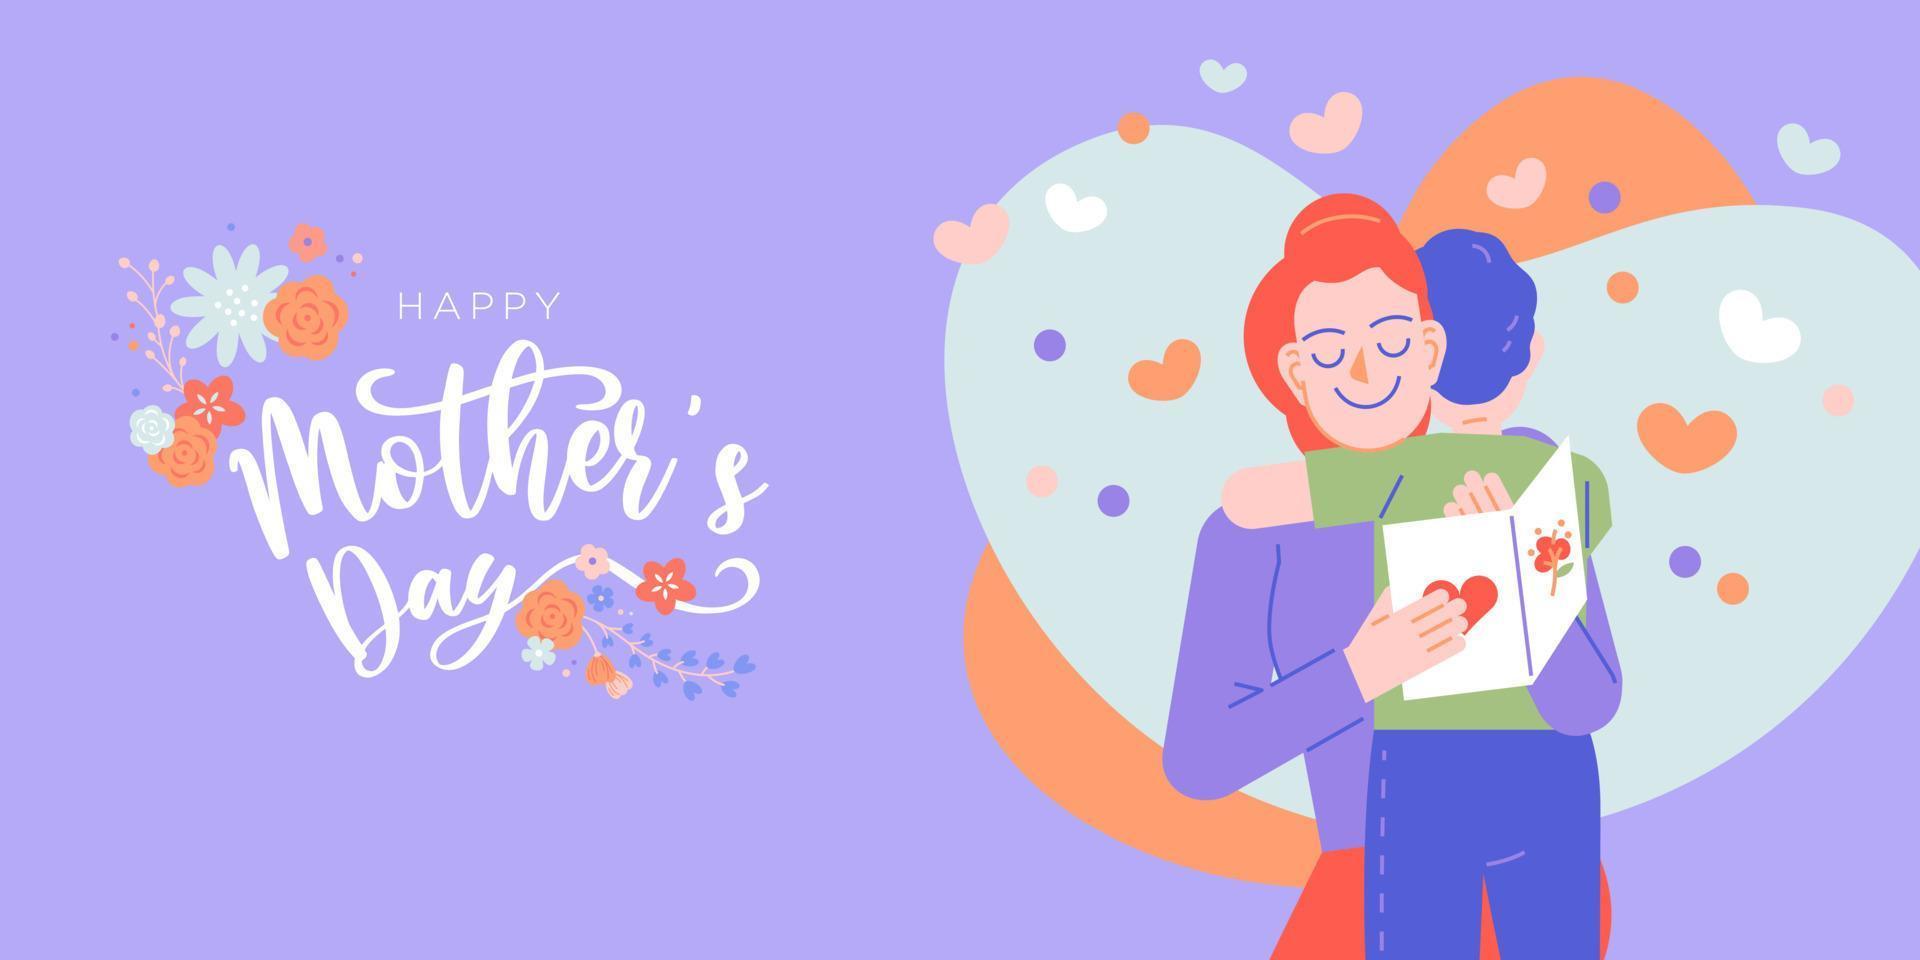 illustration vectorielle de fête des mères heureuse. maman et enfant donnent un câlin avec un texte de salutation décoratif de guirlande de fleurs bio vecteur